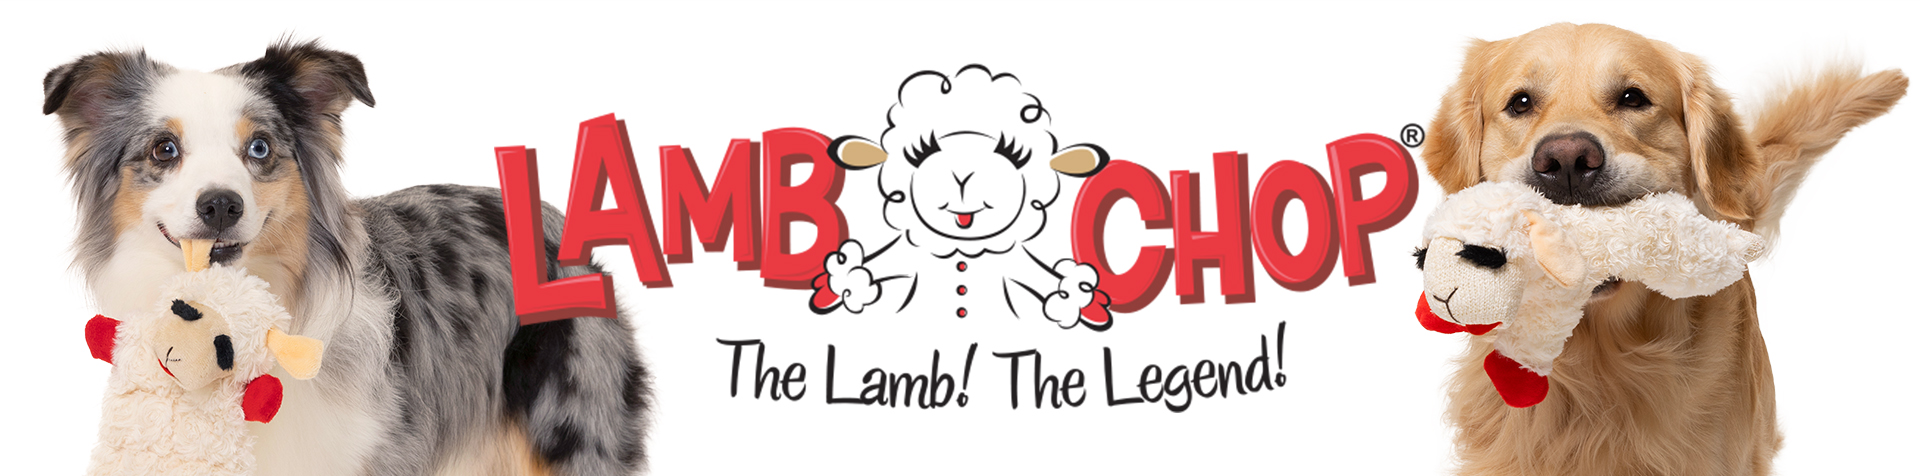 Lamb Chop<sup>®</sup> Easter